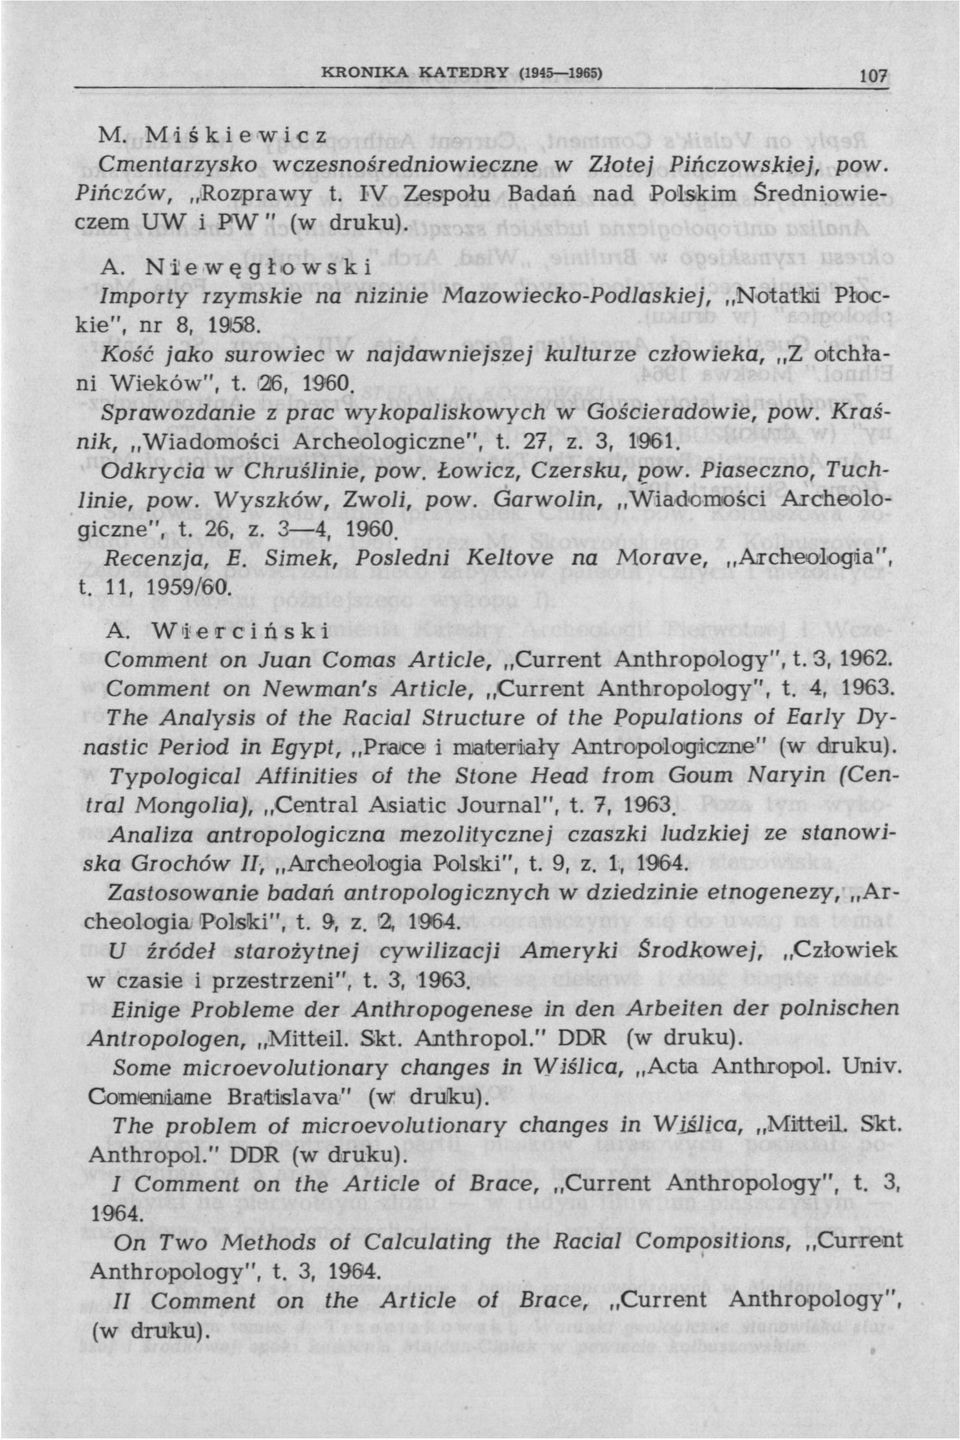 Sprawozdanie z prac wykopaliskowych w Gościeradowie, pow. Kraśnik, Wiadomości Archeologiczne", t. 27, z. 3, 1'961. Odkrycia w Chruślinie, pow. Łowicz, Czersku, pow. Piaseczno, Tuchlinie, pow.